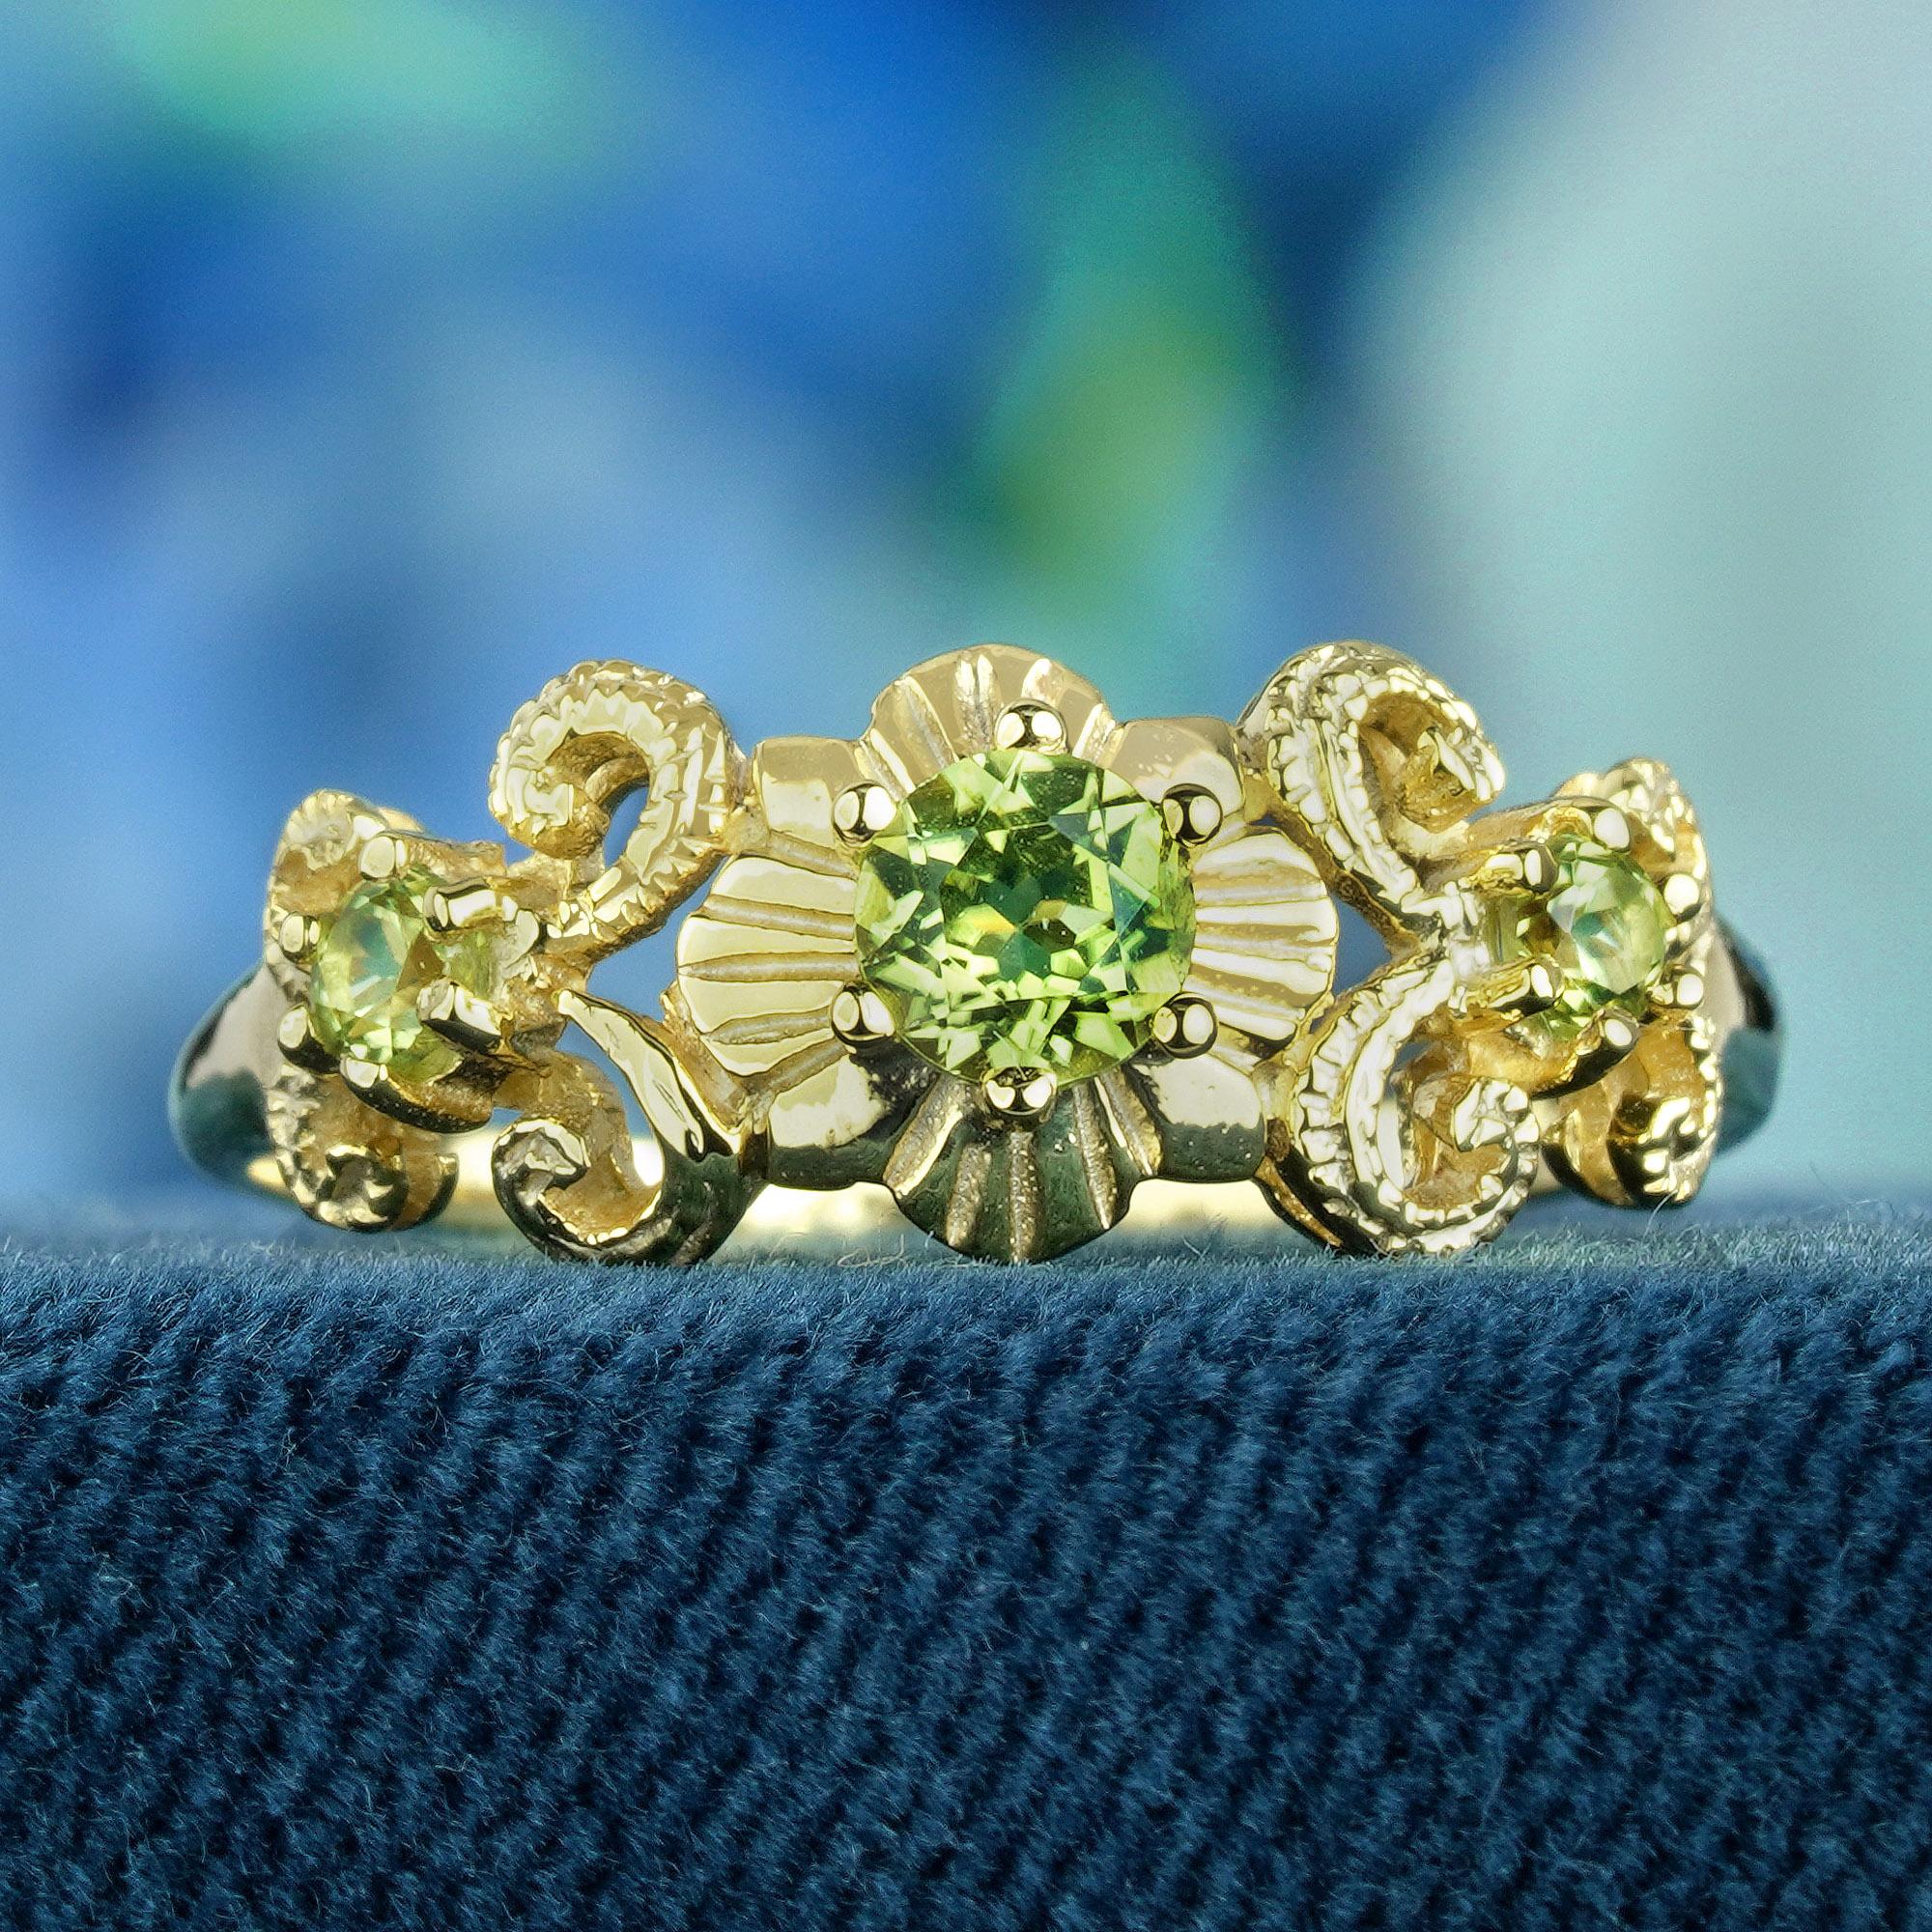 Dieser vom Vintage-Stil inspirierte Ring strahlt Eleganz aus und besticht durch seine kunstvoll geschnitzten und geschwungenen Details, die seine Schönheit noch unterstreichen. Drei runde, lindgrüne Peridots, zart in Zacken auf einem Gelbgoldband